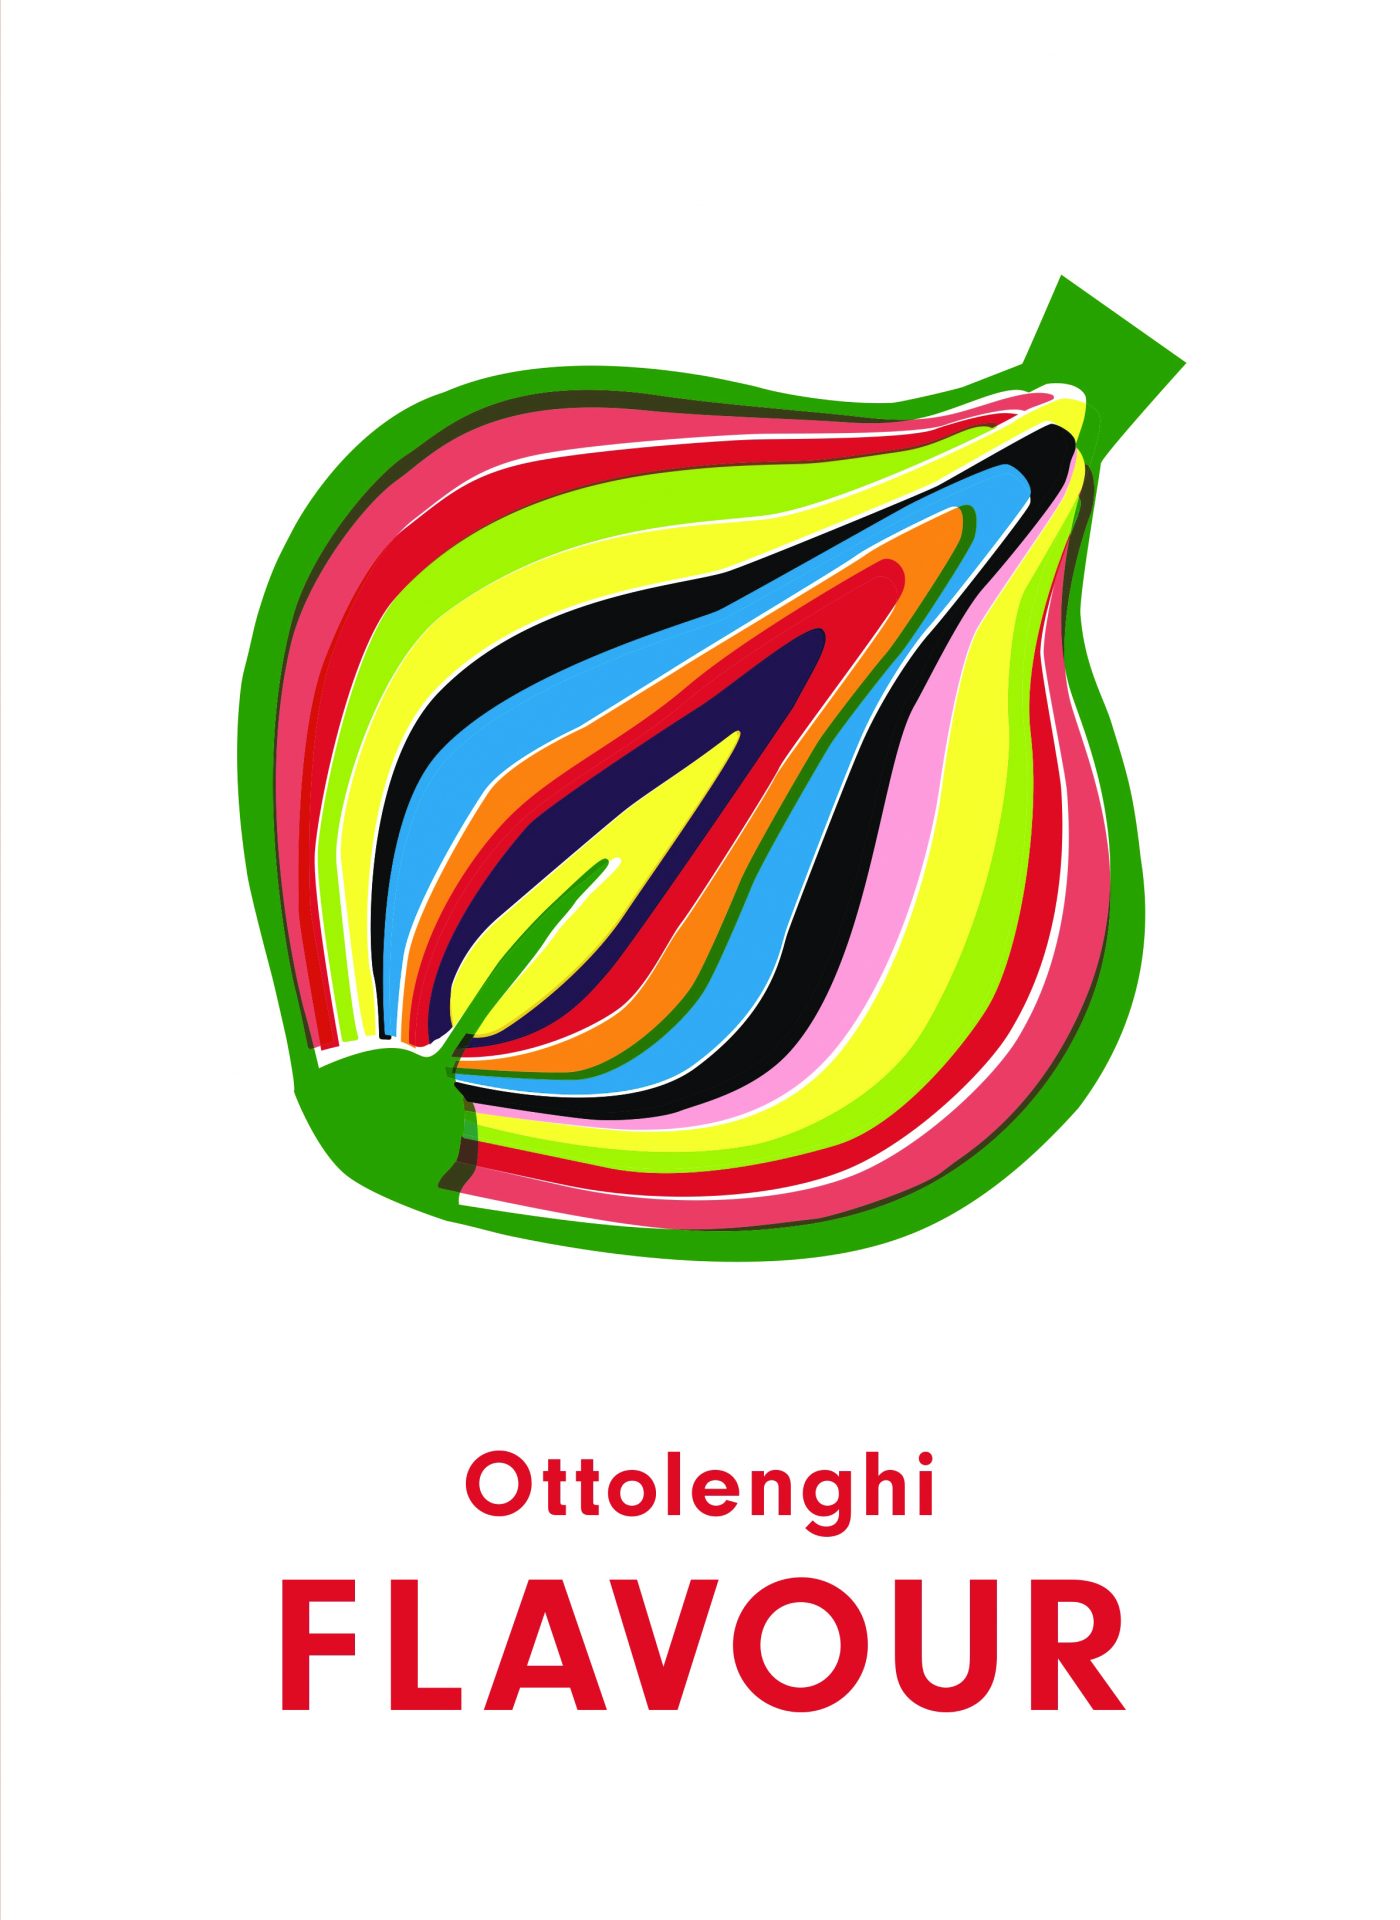 ottolenghi flavour